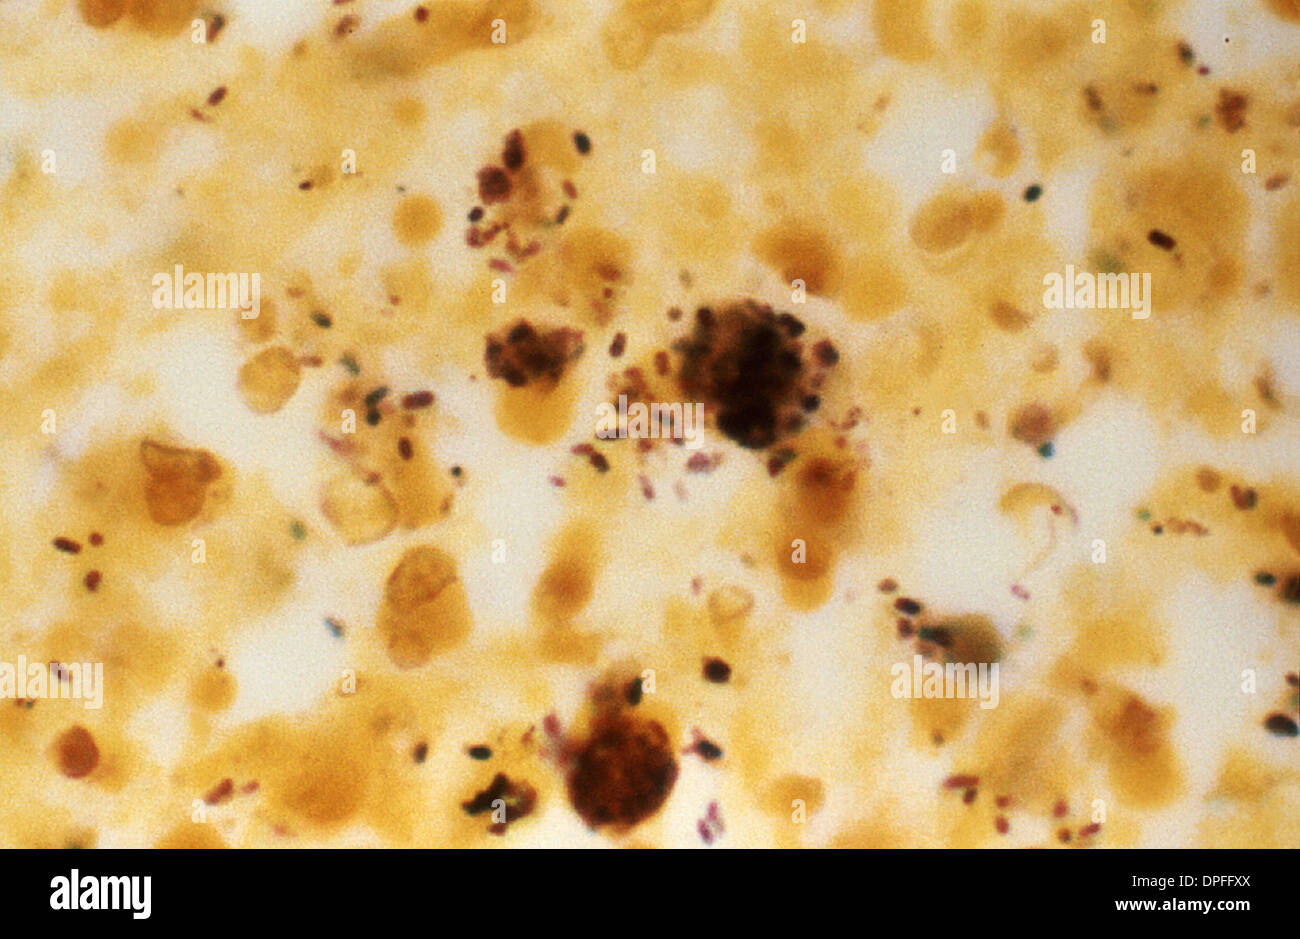 micrograph of Legionella pneumophila bacteria Stock Photo